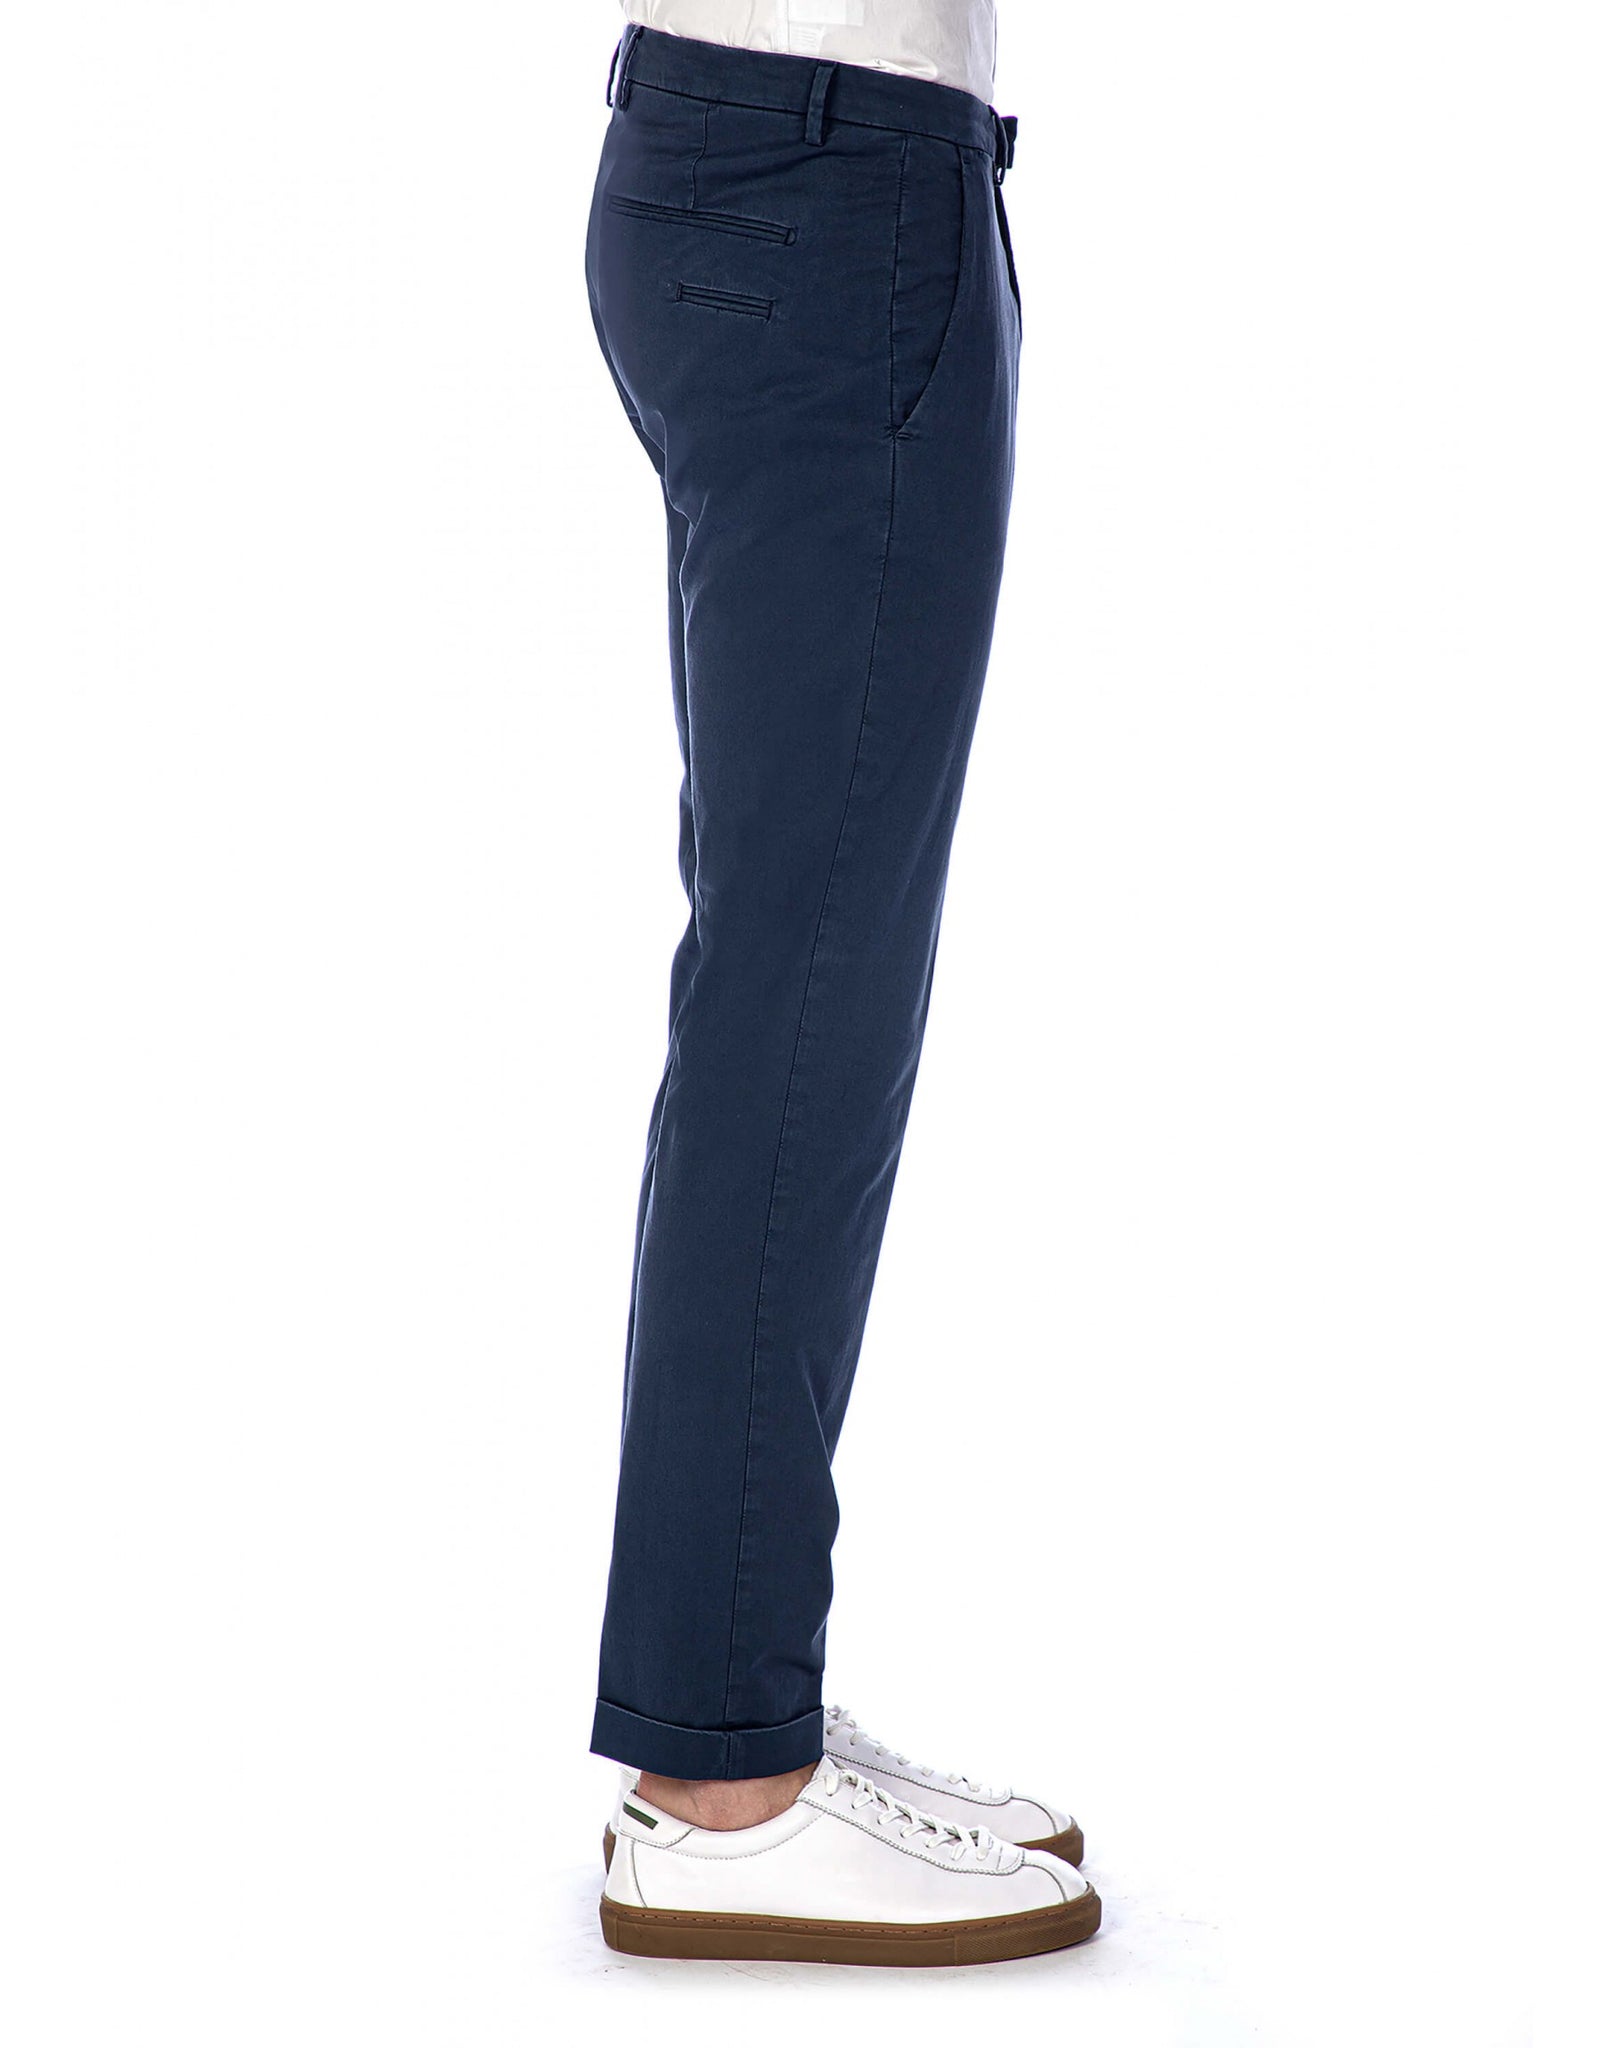 Pantalone Tasca America In Raso / Blu - Ideal Moda